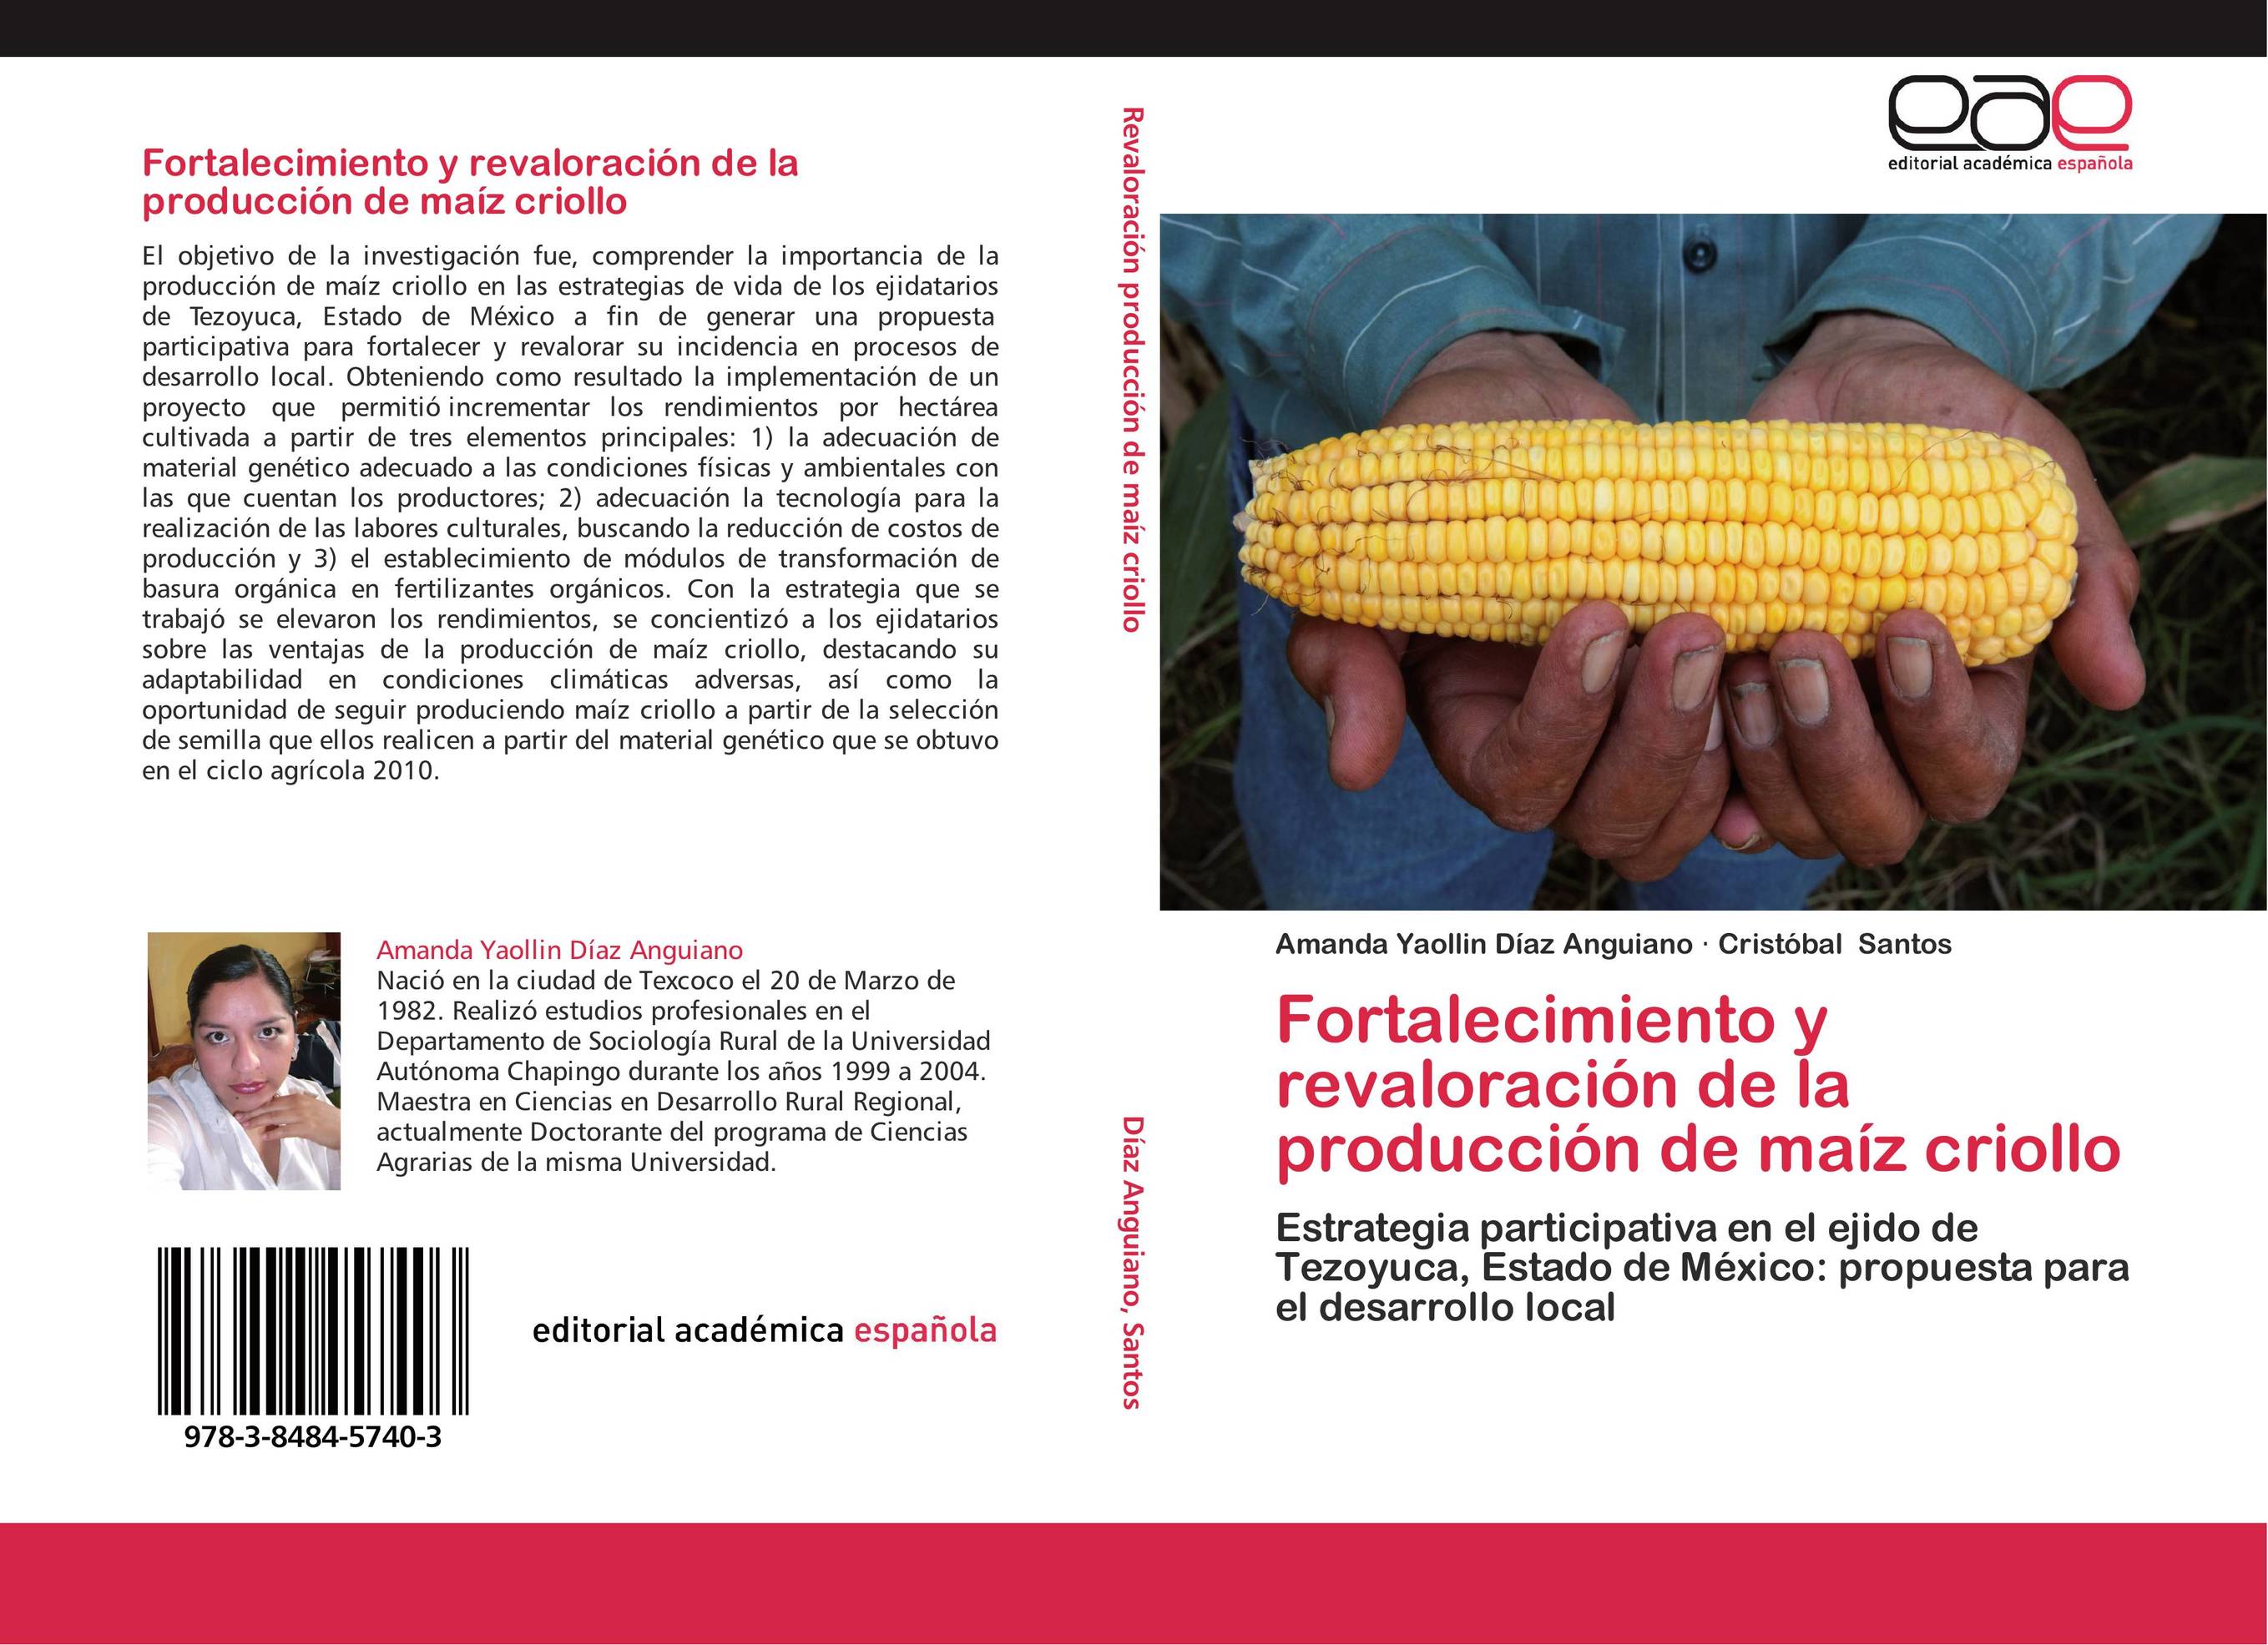 Fortalecimiento y revaloración de la producción de maíz criollo